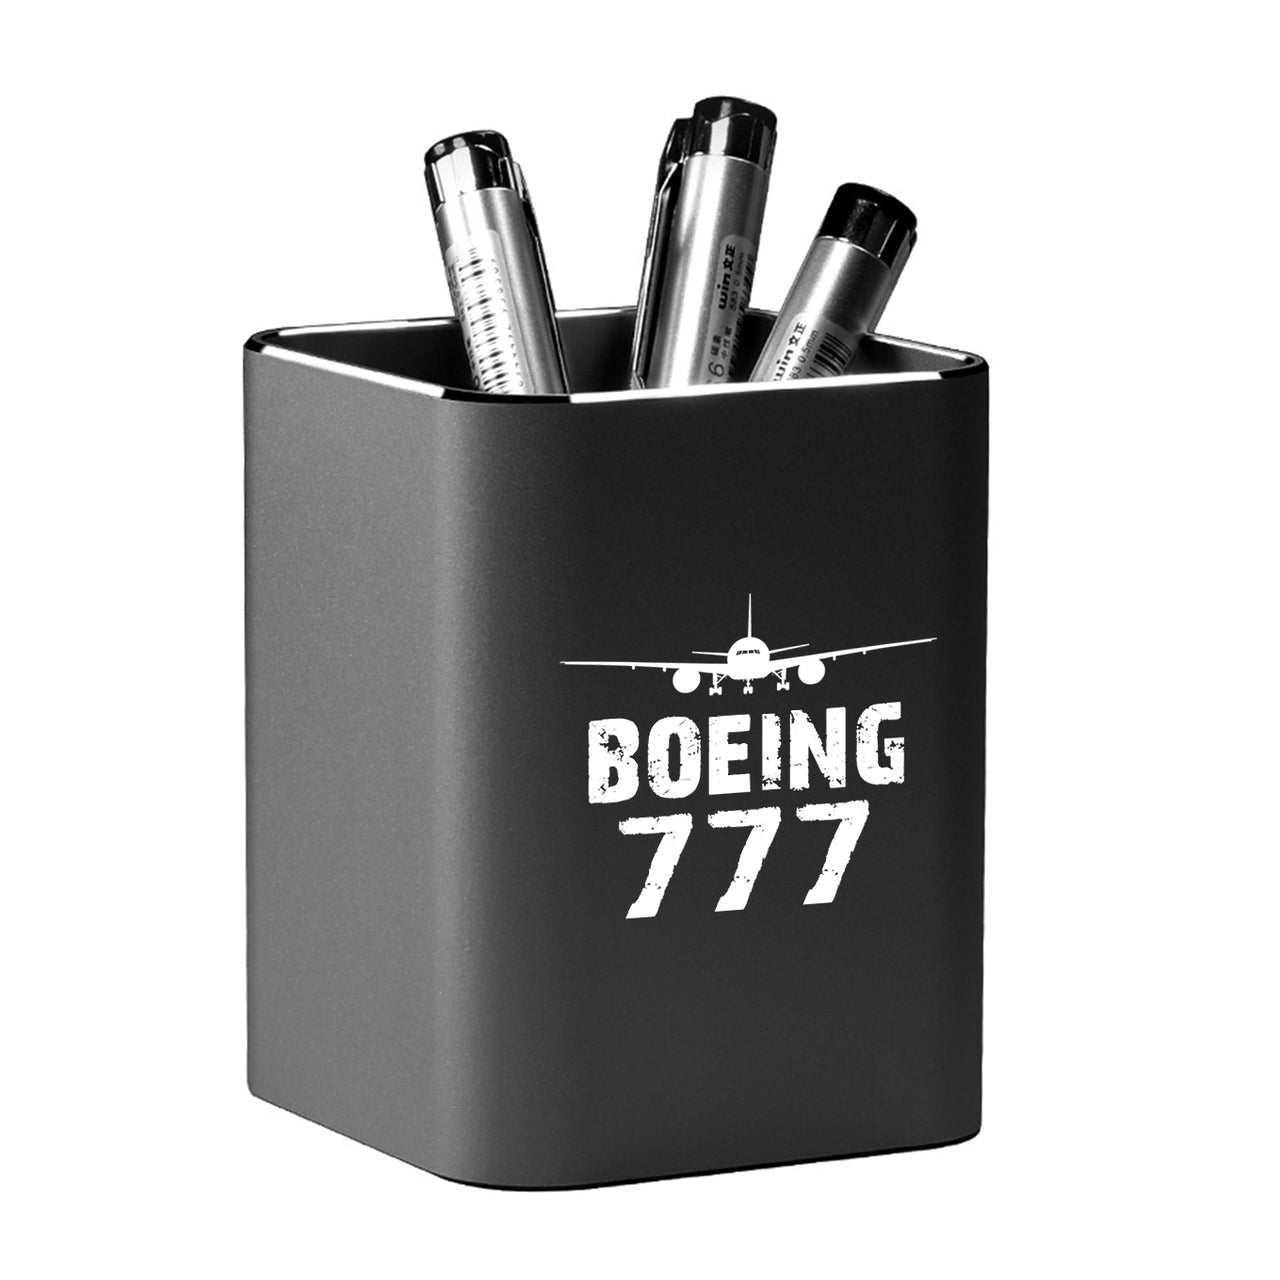 Boeing 777 & Plane Designed Aluminium Alloy Pen Holders